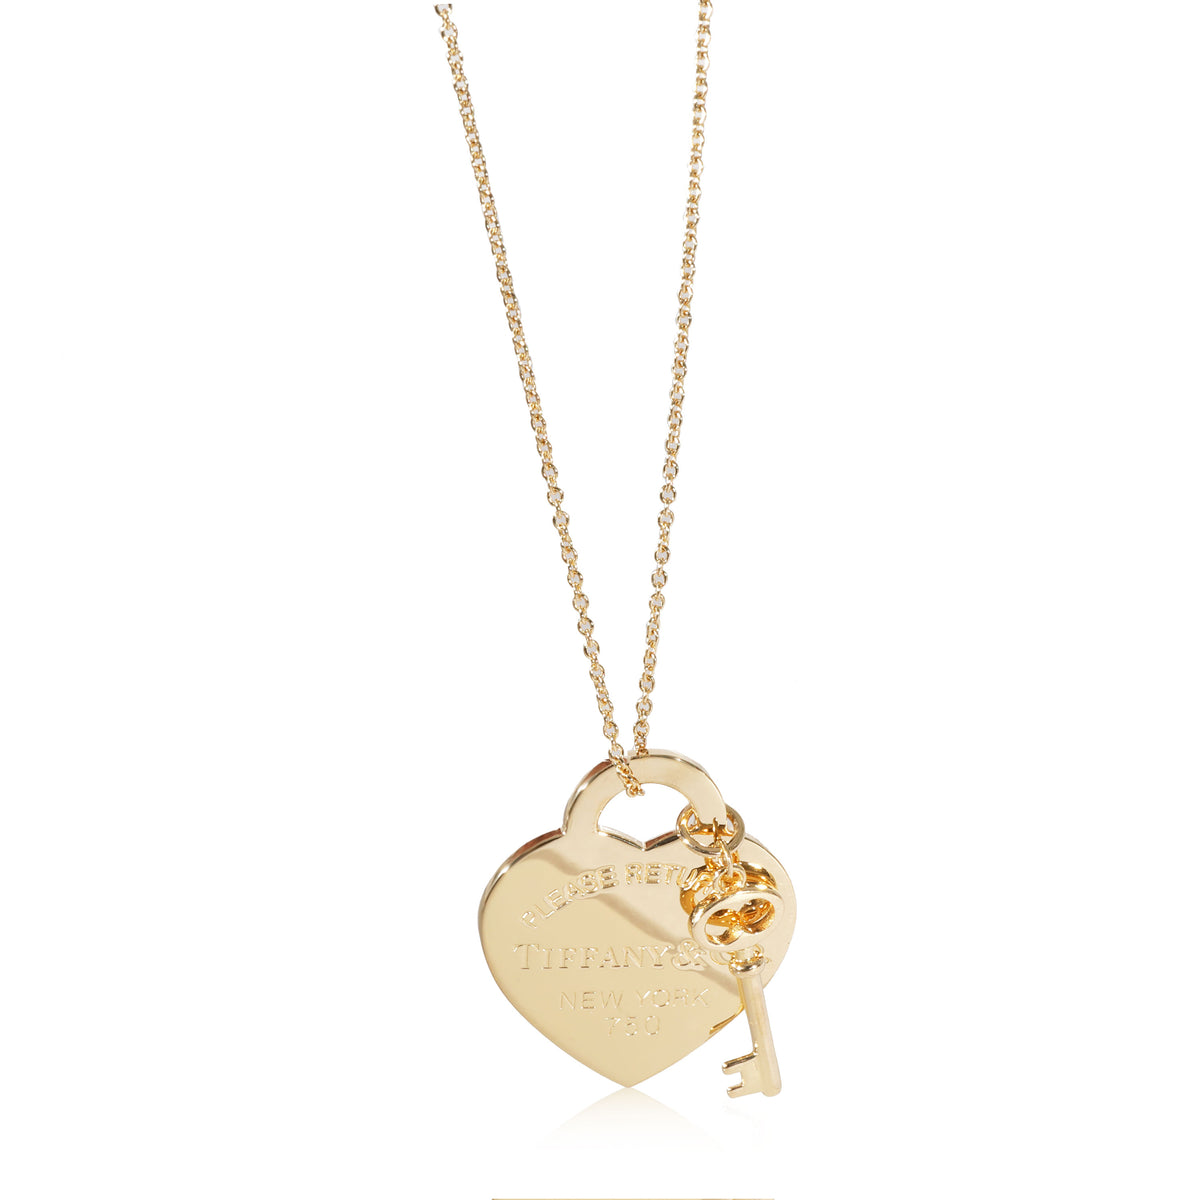 Tiffany & Co. Return to Tiffany Mini Double Heart Tag Pendant Necklace 18K  Gold | eBay